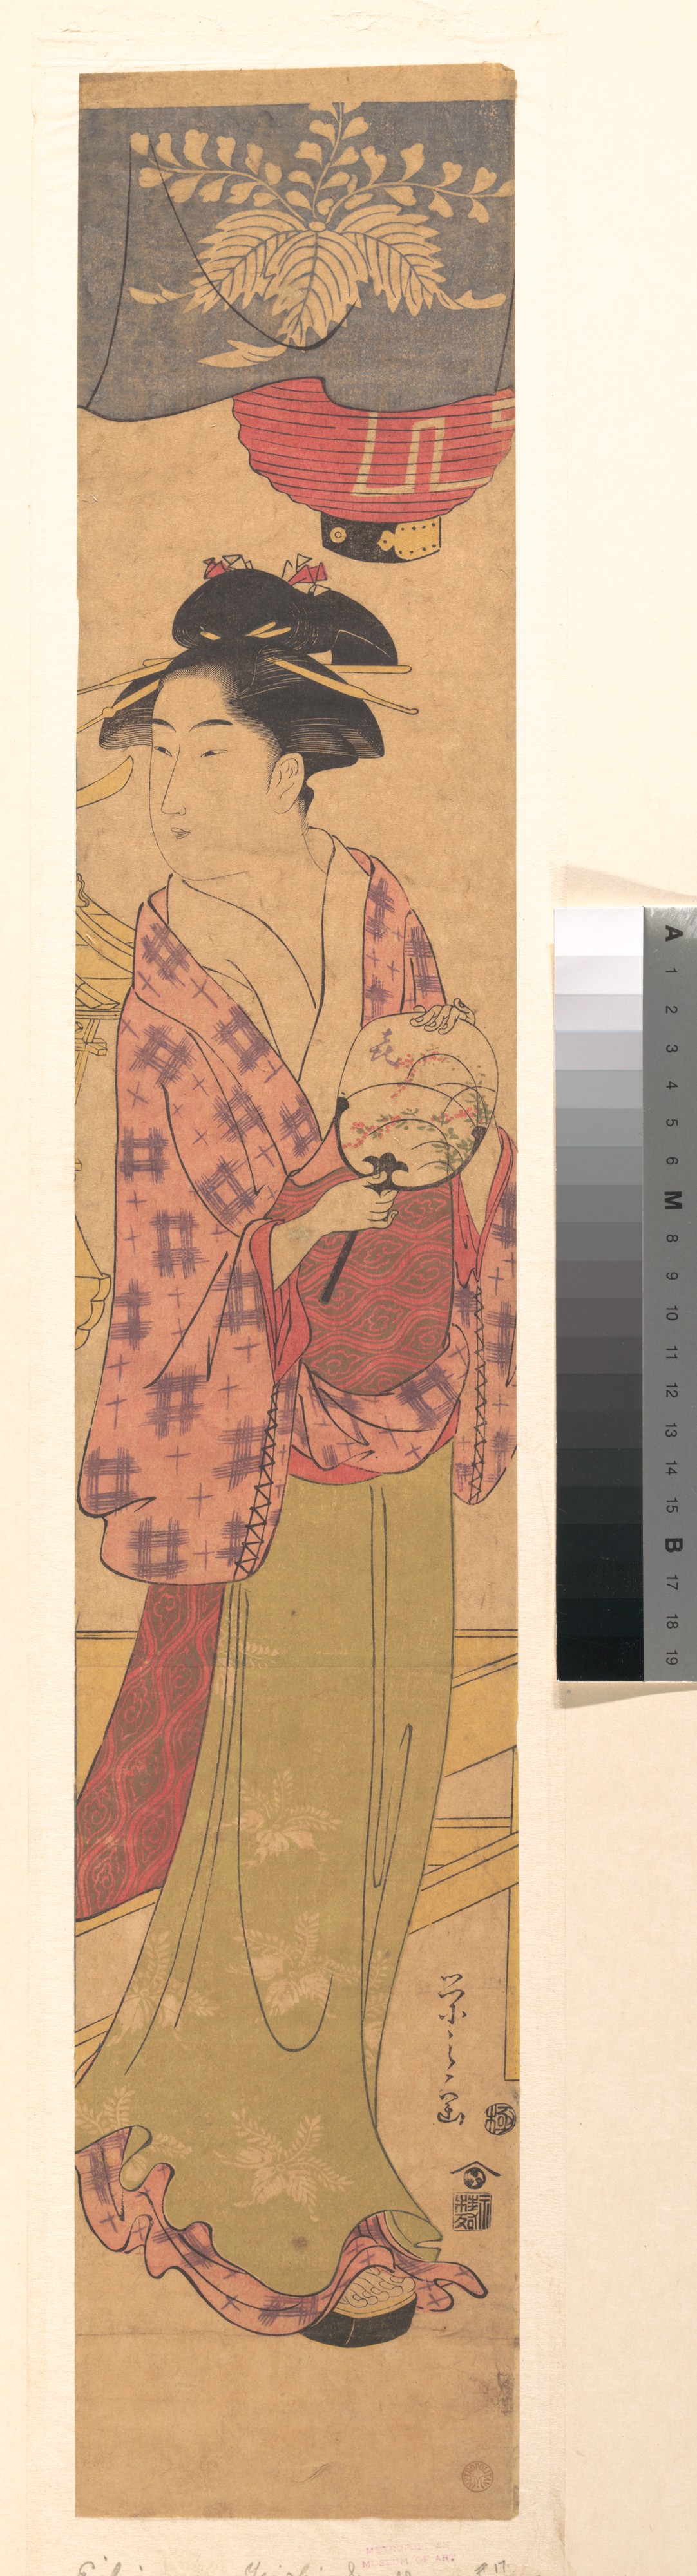 Hosoda Eishi: A Girl with a Fan - Metropolitan Museum of Art - Ukiyo-e ...